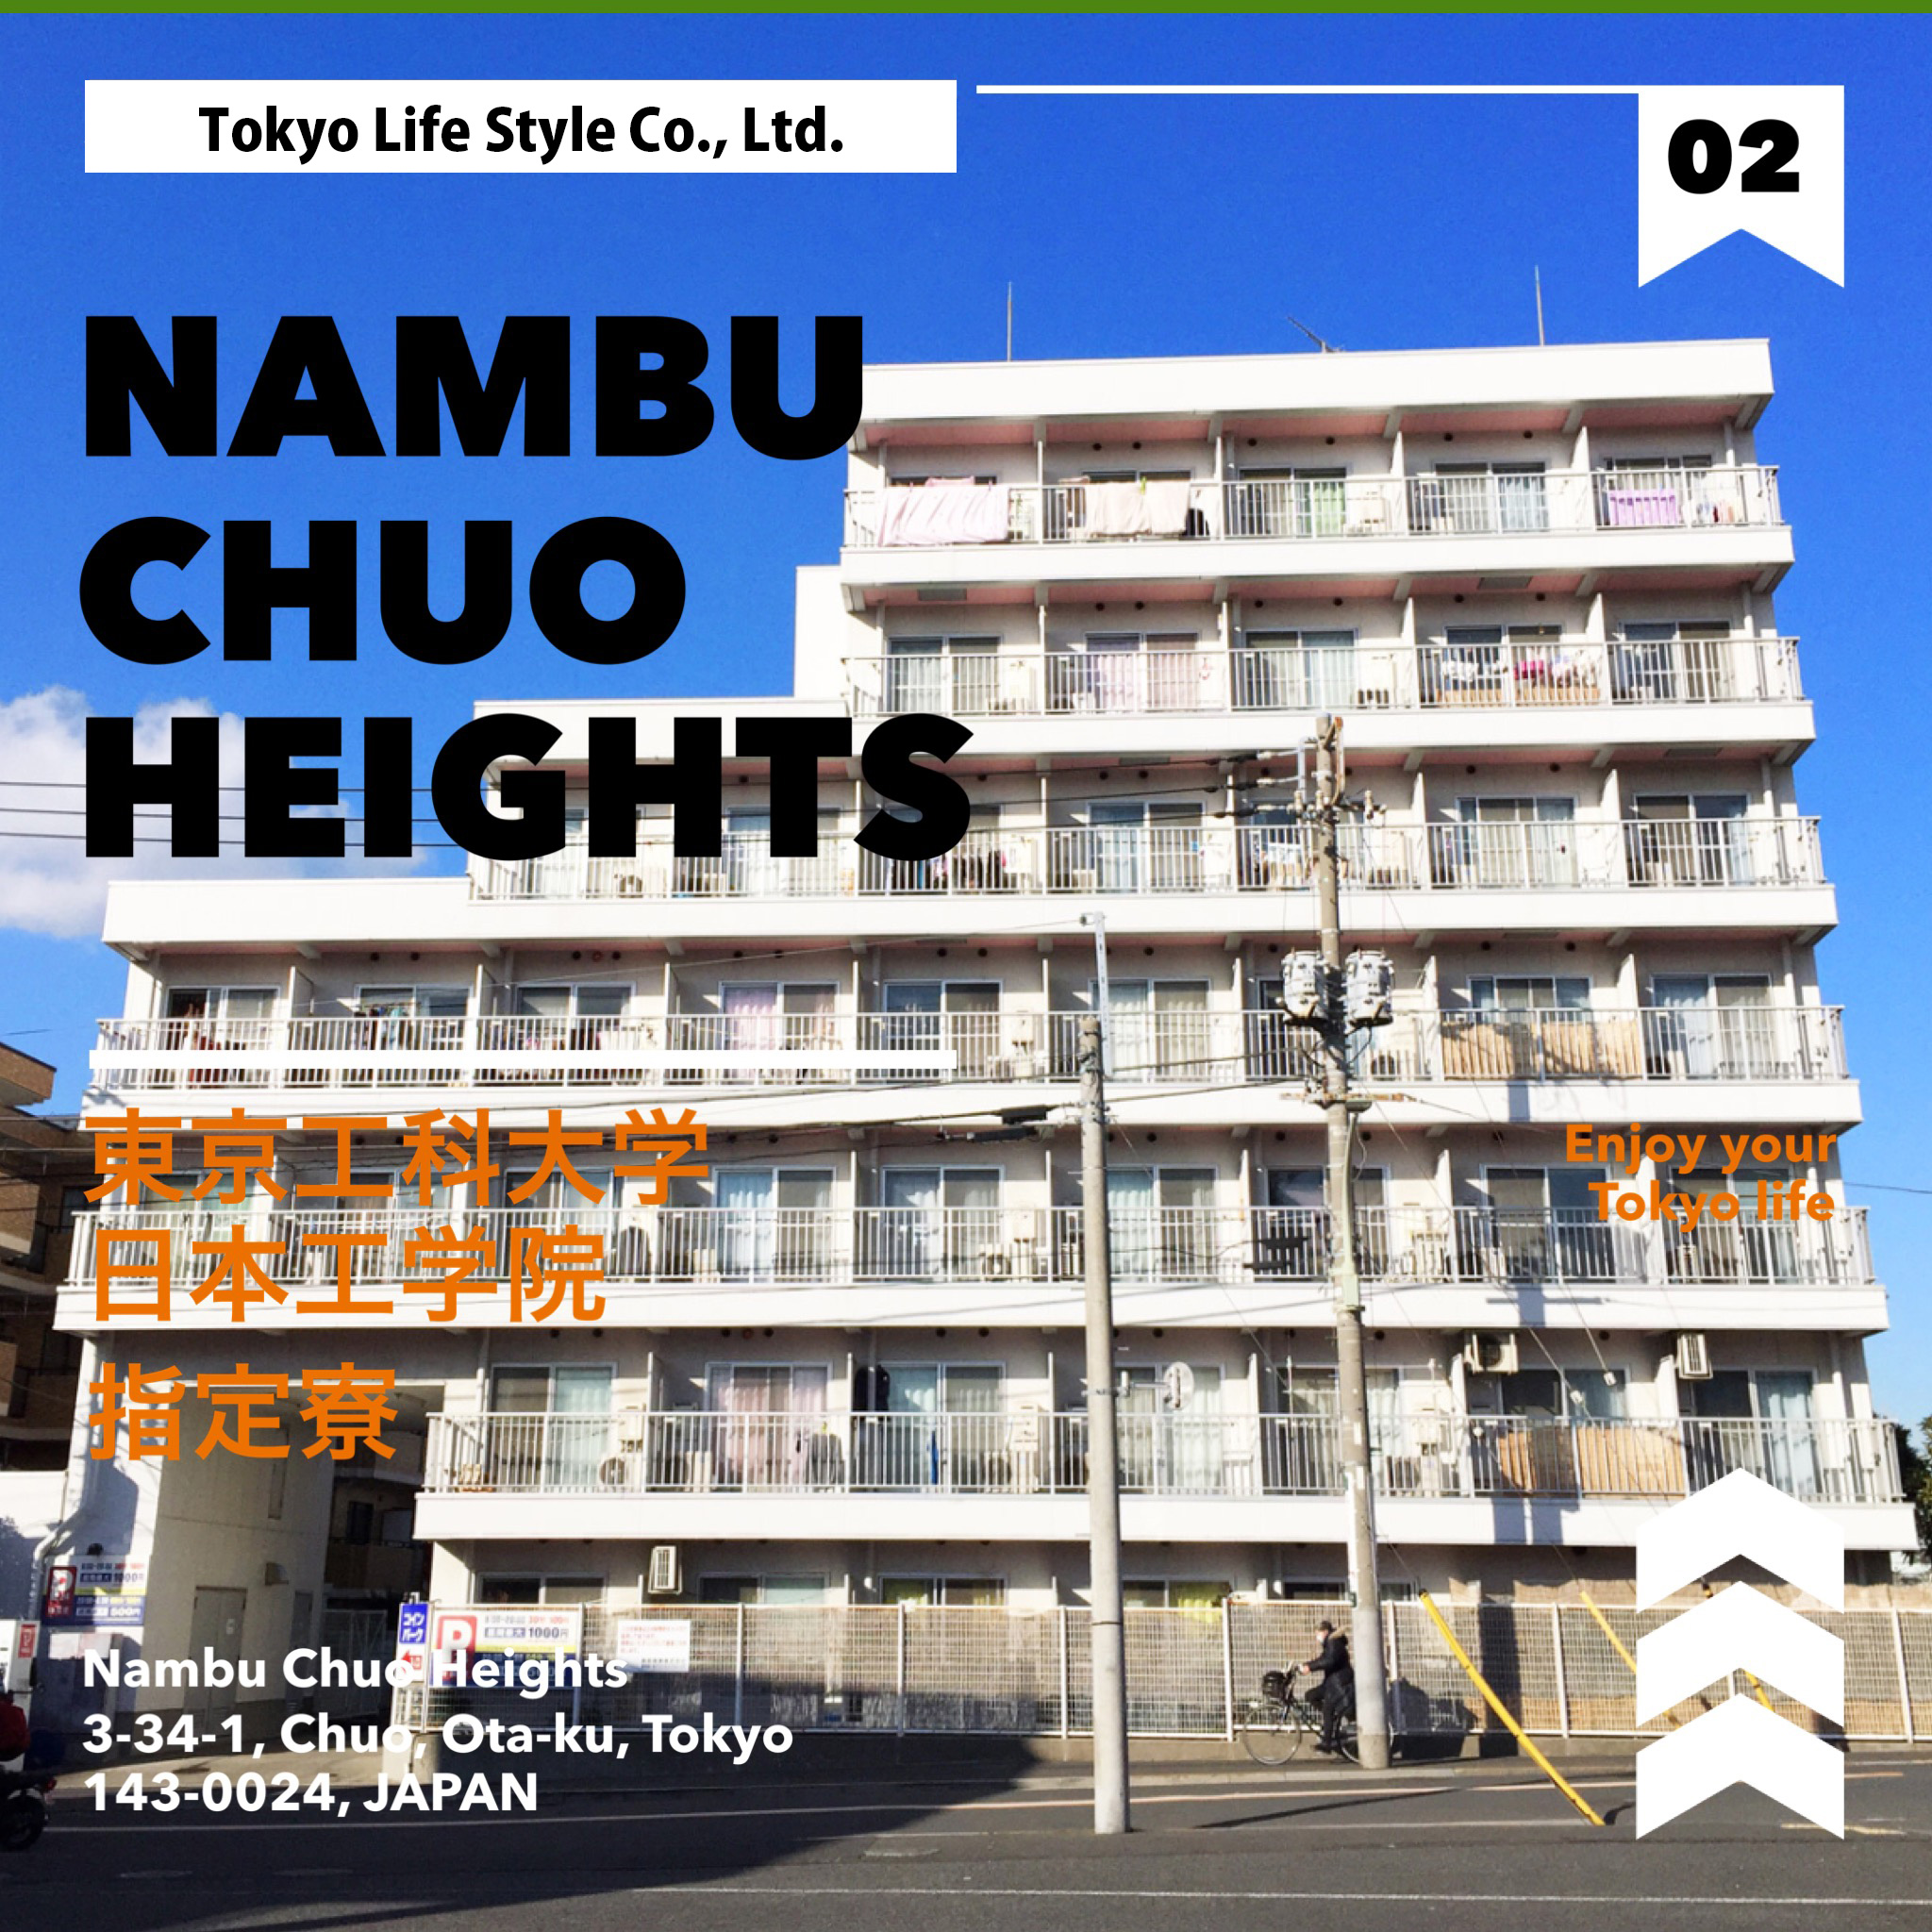 Nambu Chuo Hights